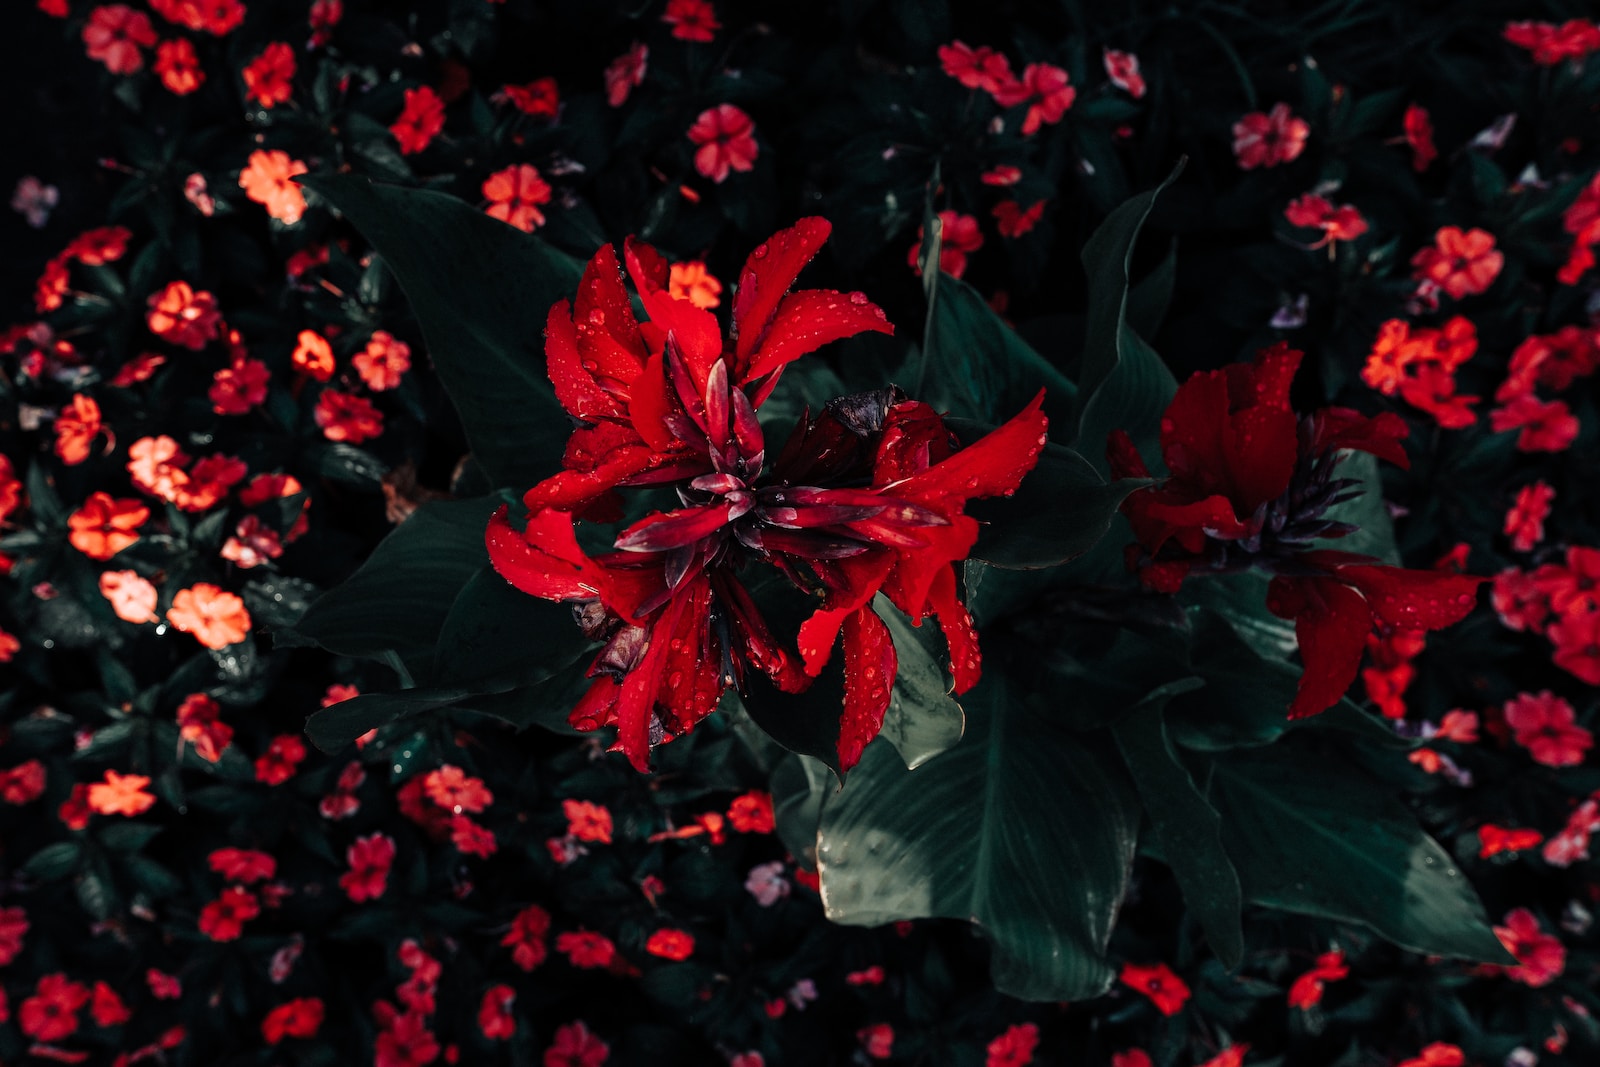 red broad petaled flowers